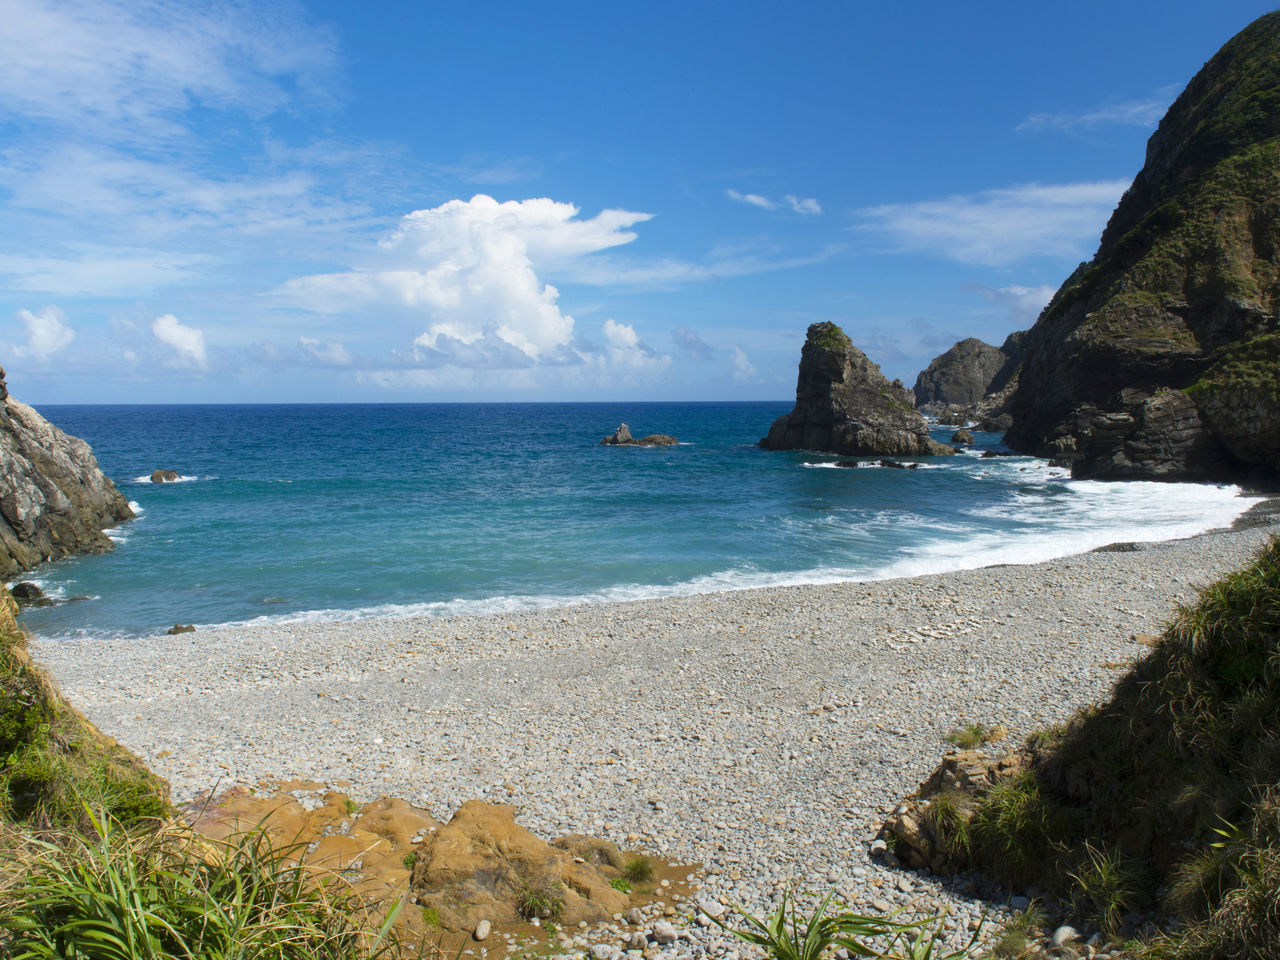  تغطي هذا الشاطئ حجارة ناعمة مستديرة صقلتها الأمواج المتلاطمة.